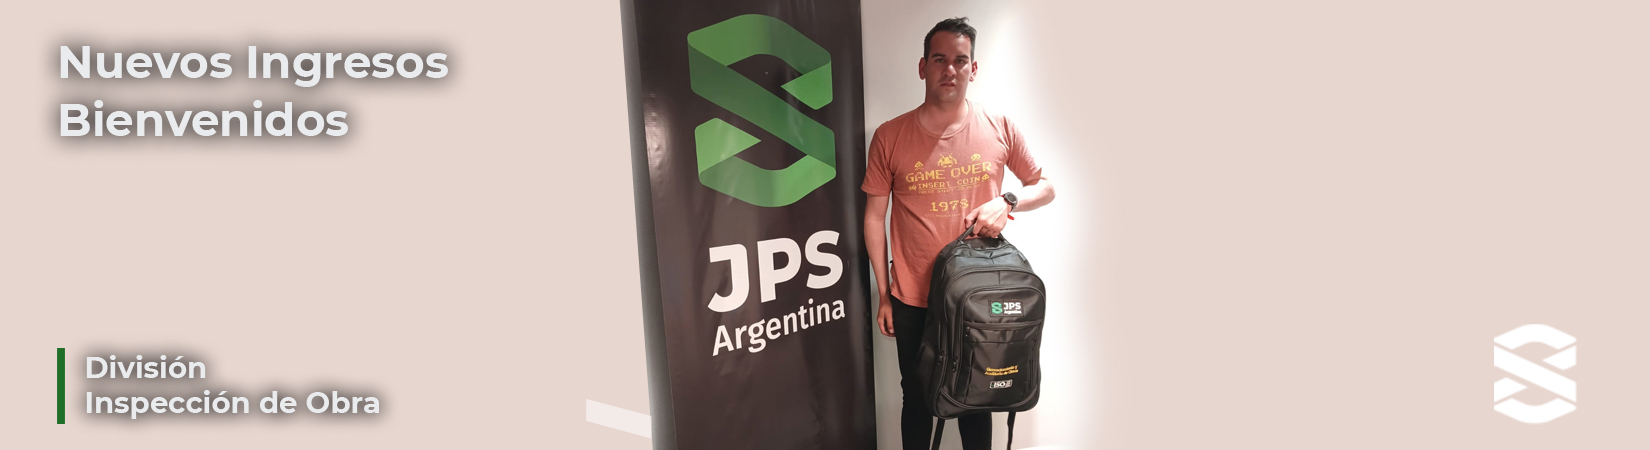 ¡Bienvenidos JPS Argentina! OCTUBRE